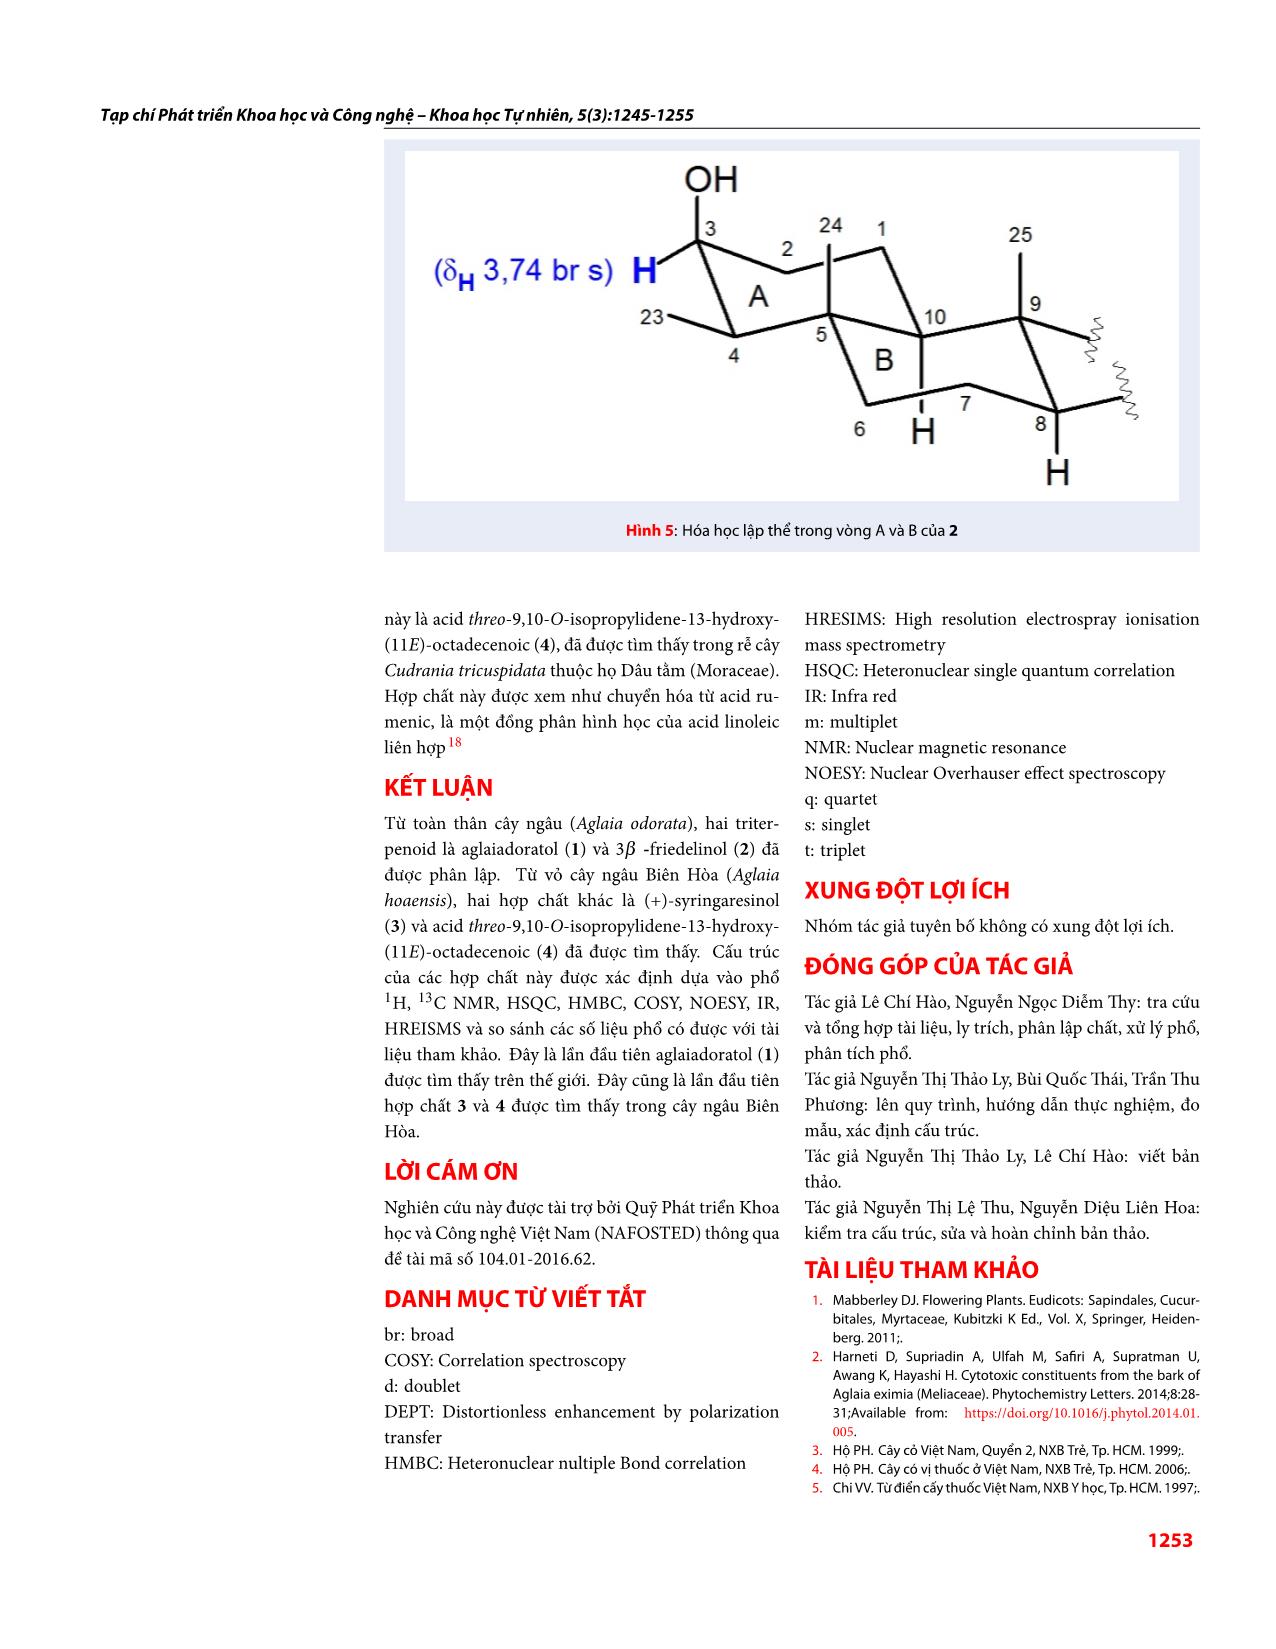 Thành phần hóa học của cây ngâu (Aglaia odorata) và ngâu Biên Hòa (Aglaia hoaensis) trang 9